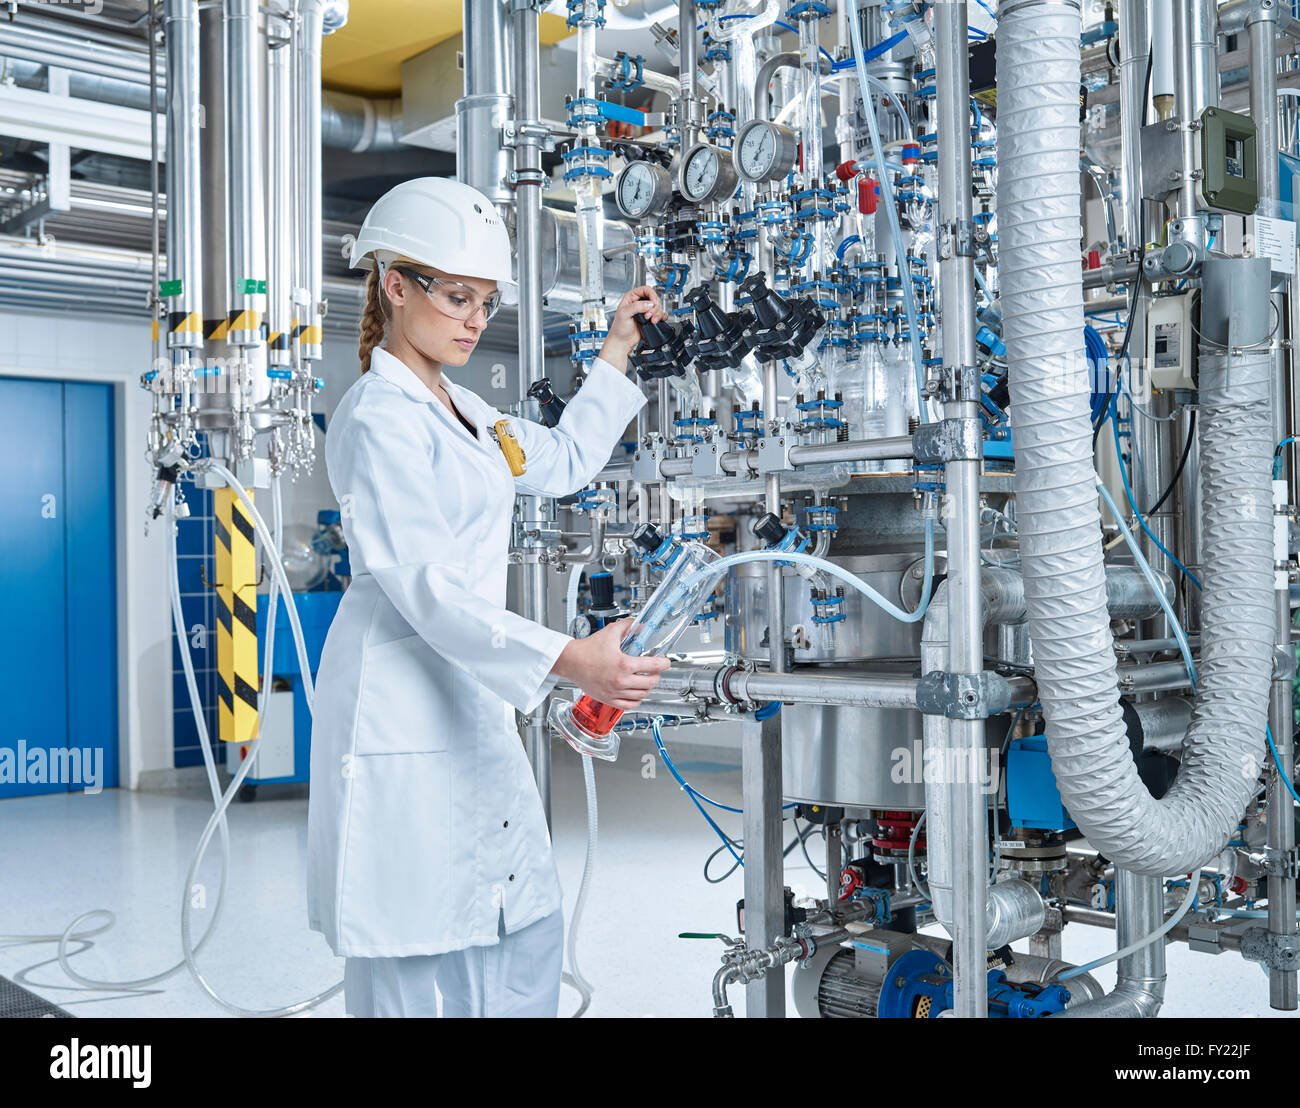 Weibliche Chemielaborant, 20-25 Jahre, Chemiker, füllen ein Gefäß mit einer roten Flüssigkeit in einem Labor, Wattens, Innsbruck-Land, Tyrol Stockfoto